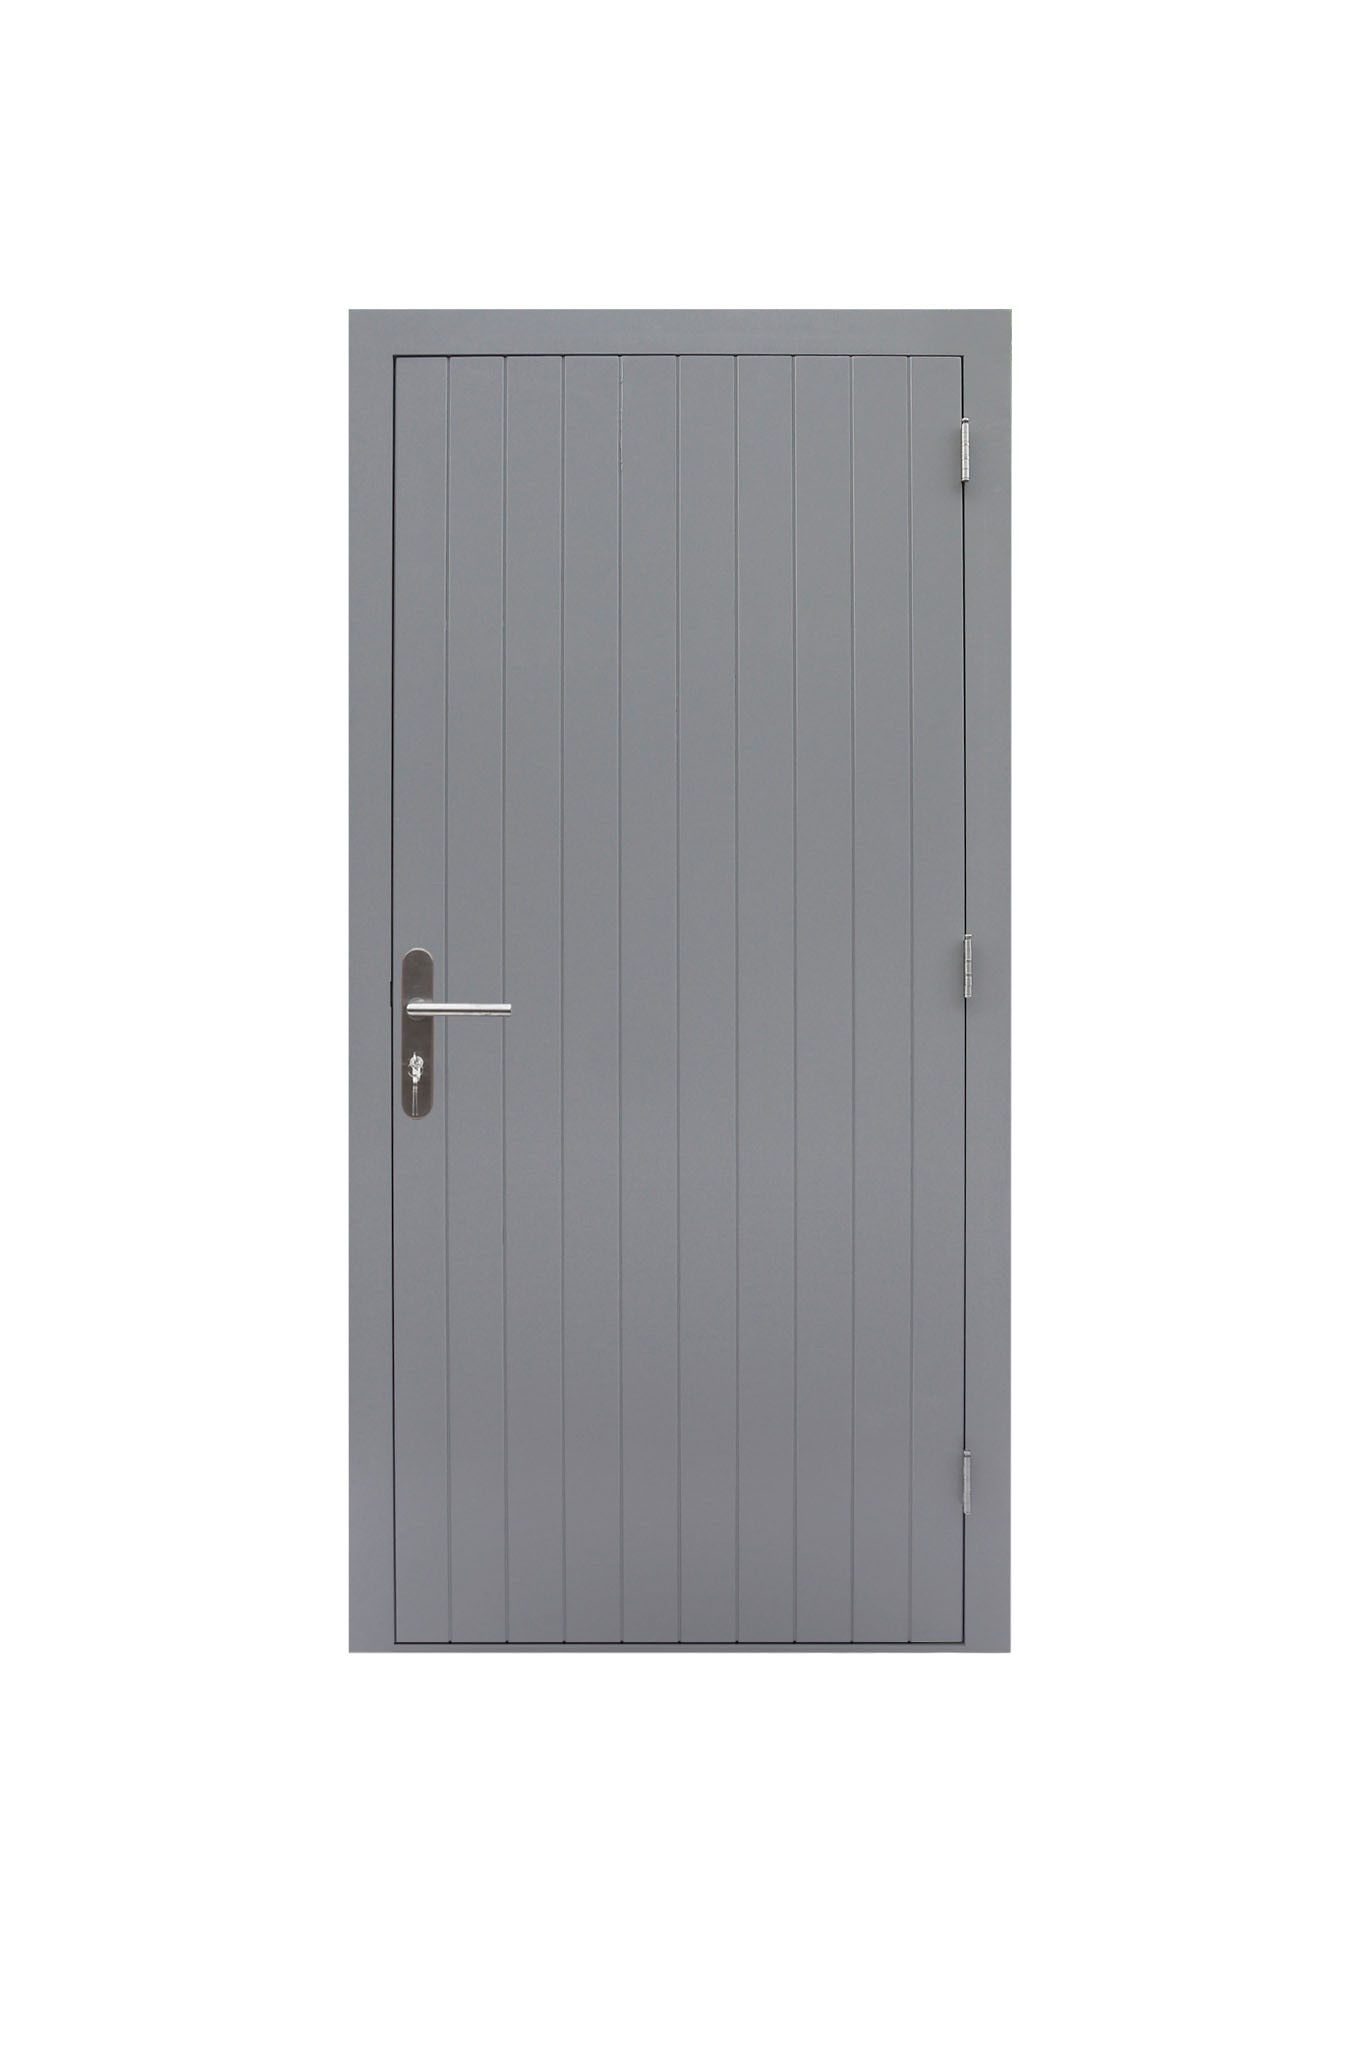 Hardhouten enkele dichte deur Prestige, rechtsdraaiend, 109 x 221 cm, grijs gegrond